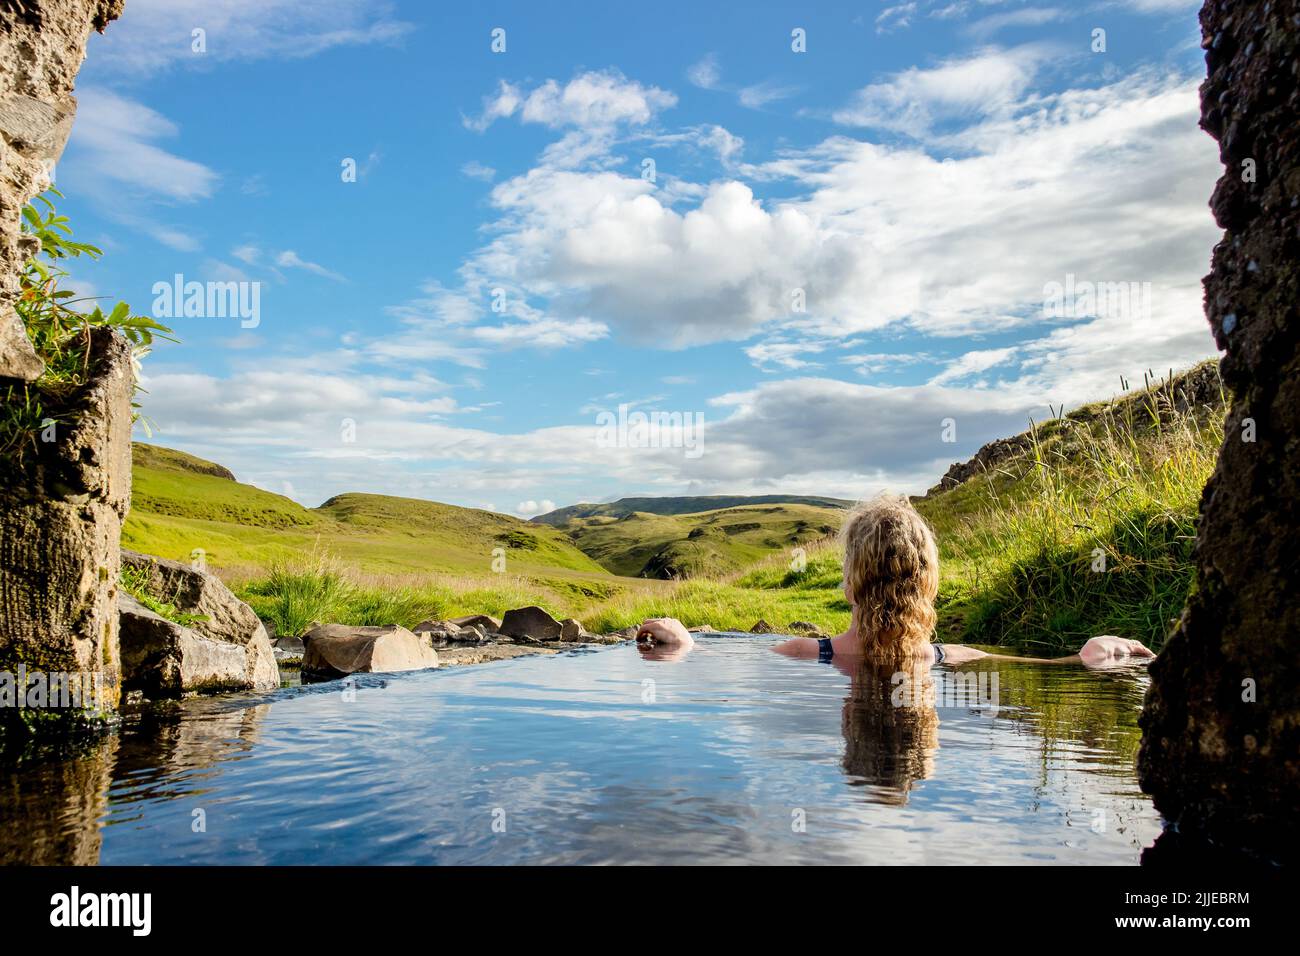 Mujer relajarse y bañarse en la piscina natural geotérmica caliente, aguas termales en Islandia en verano. Verdes colinas ondulantes y cielo azul en el fondo. Caliente Foto de stock